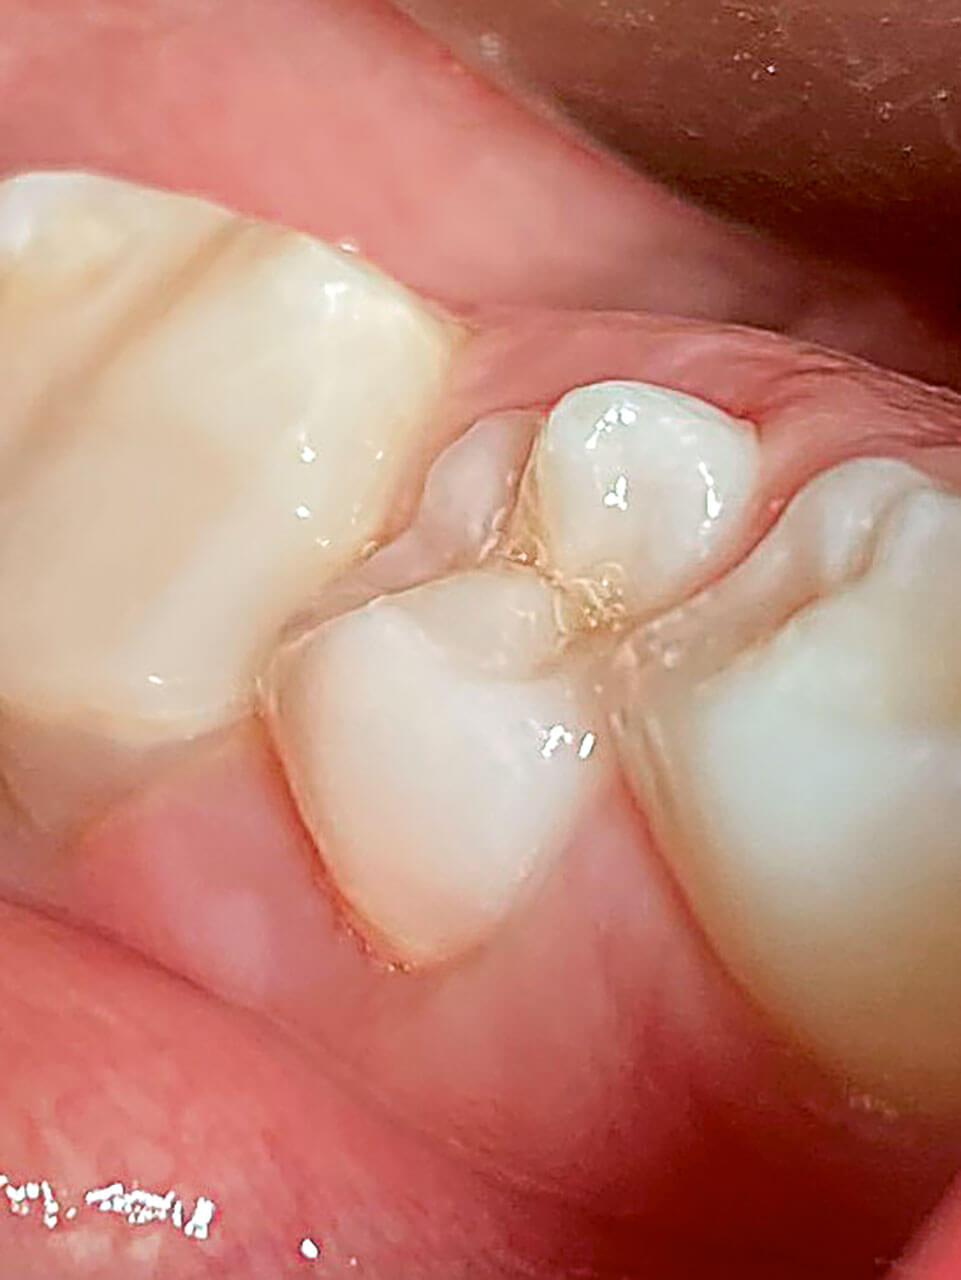 Abb. 1 In der Kinderpraxis ange­fertigte Aufnahme der geschwollenen und druckempfindlichen Umschlagfalte am Zahn 45. Der Zahn ist noch nicht vollständig durchgebrochen und koronal kariesfrei.